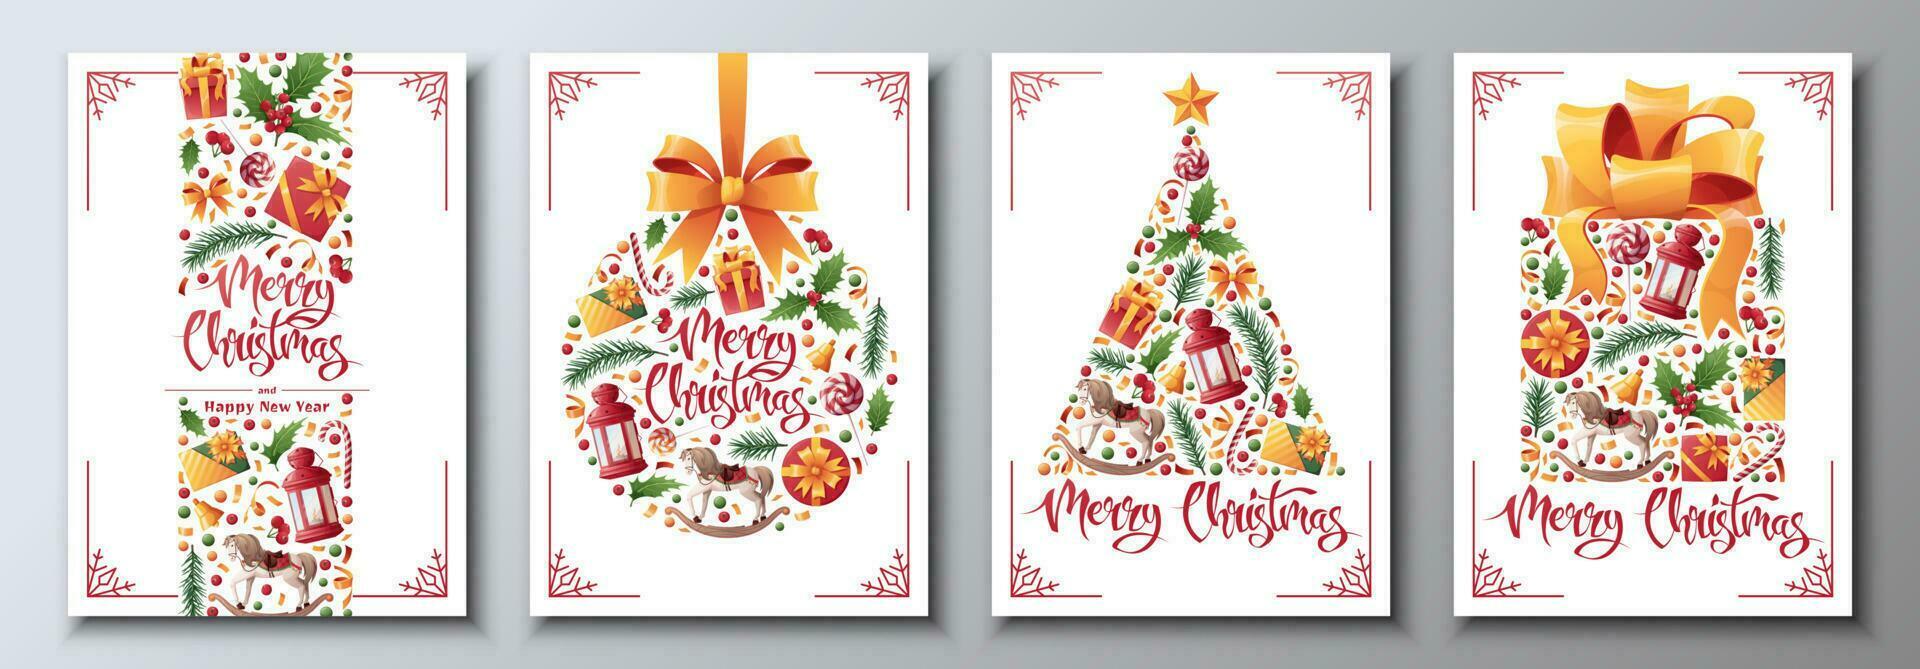 conjunto de Navidad y nuevo año tarjetas con festivo decoración. Navidad pelota, árbol, regalo. genial para invitaciones, tarjetas, carteles, pancartas vector